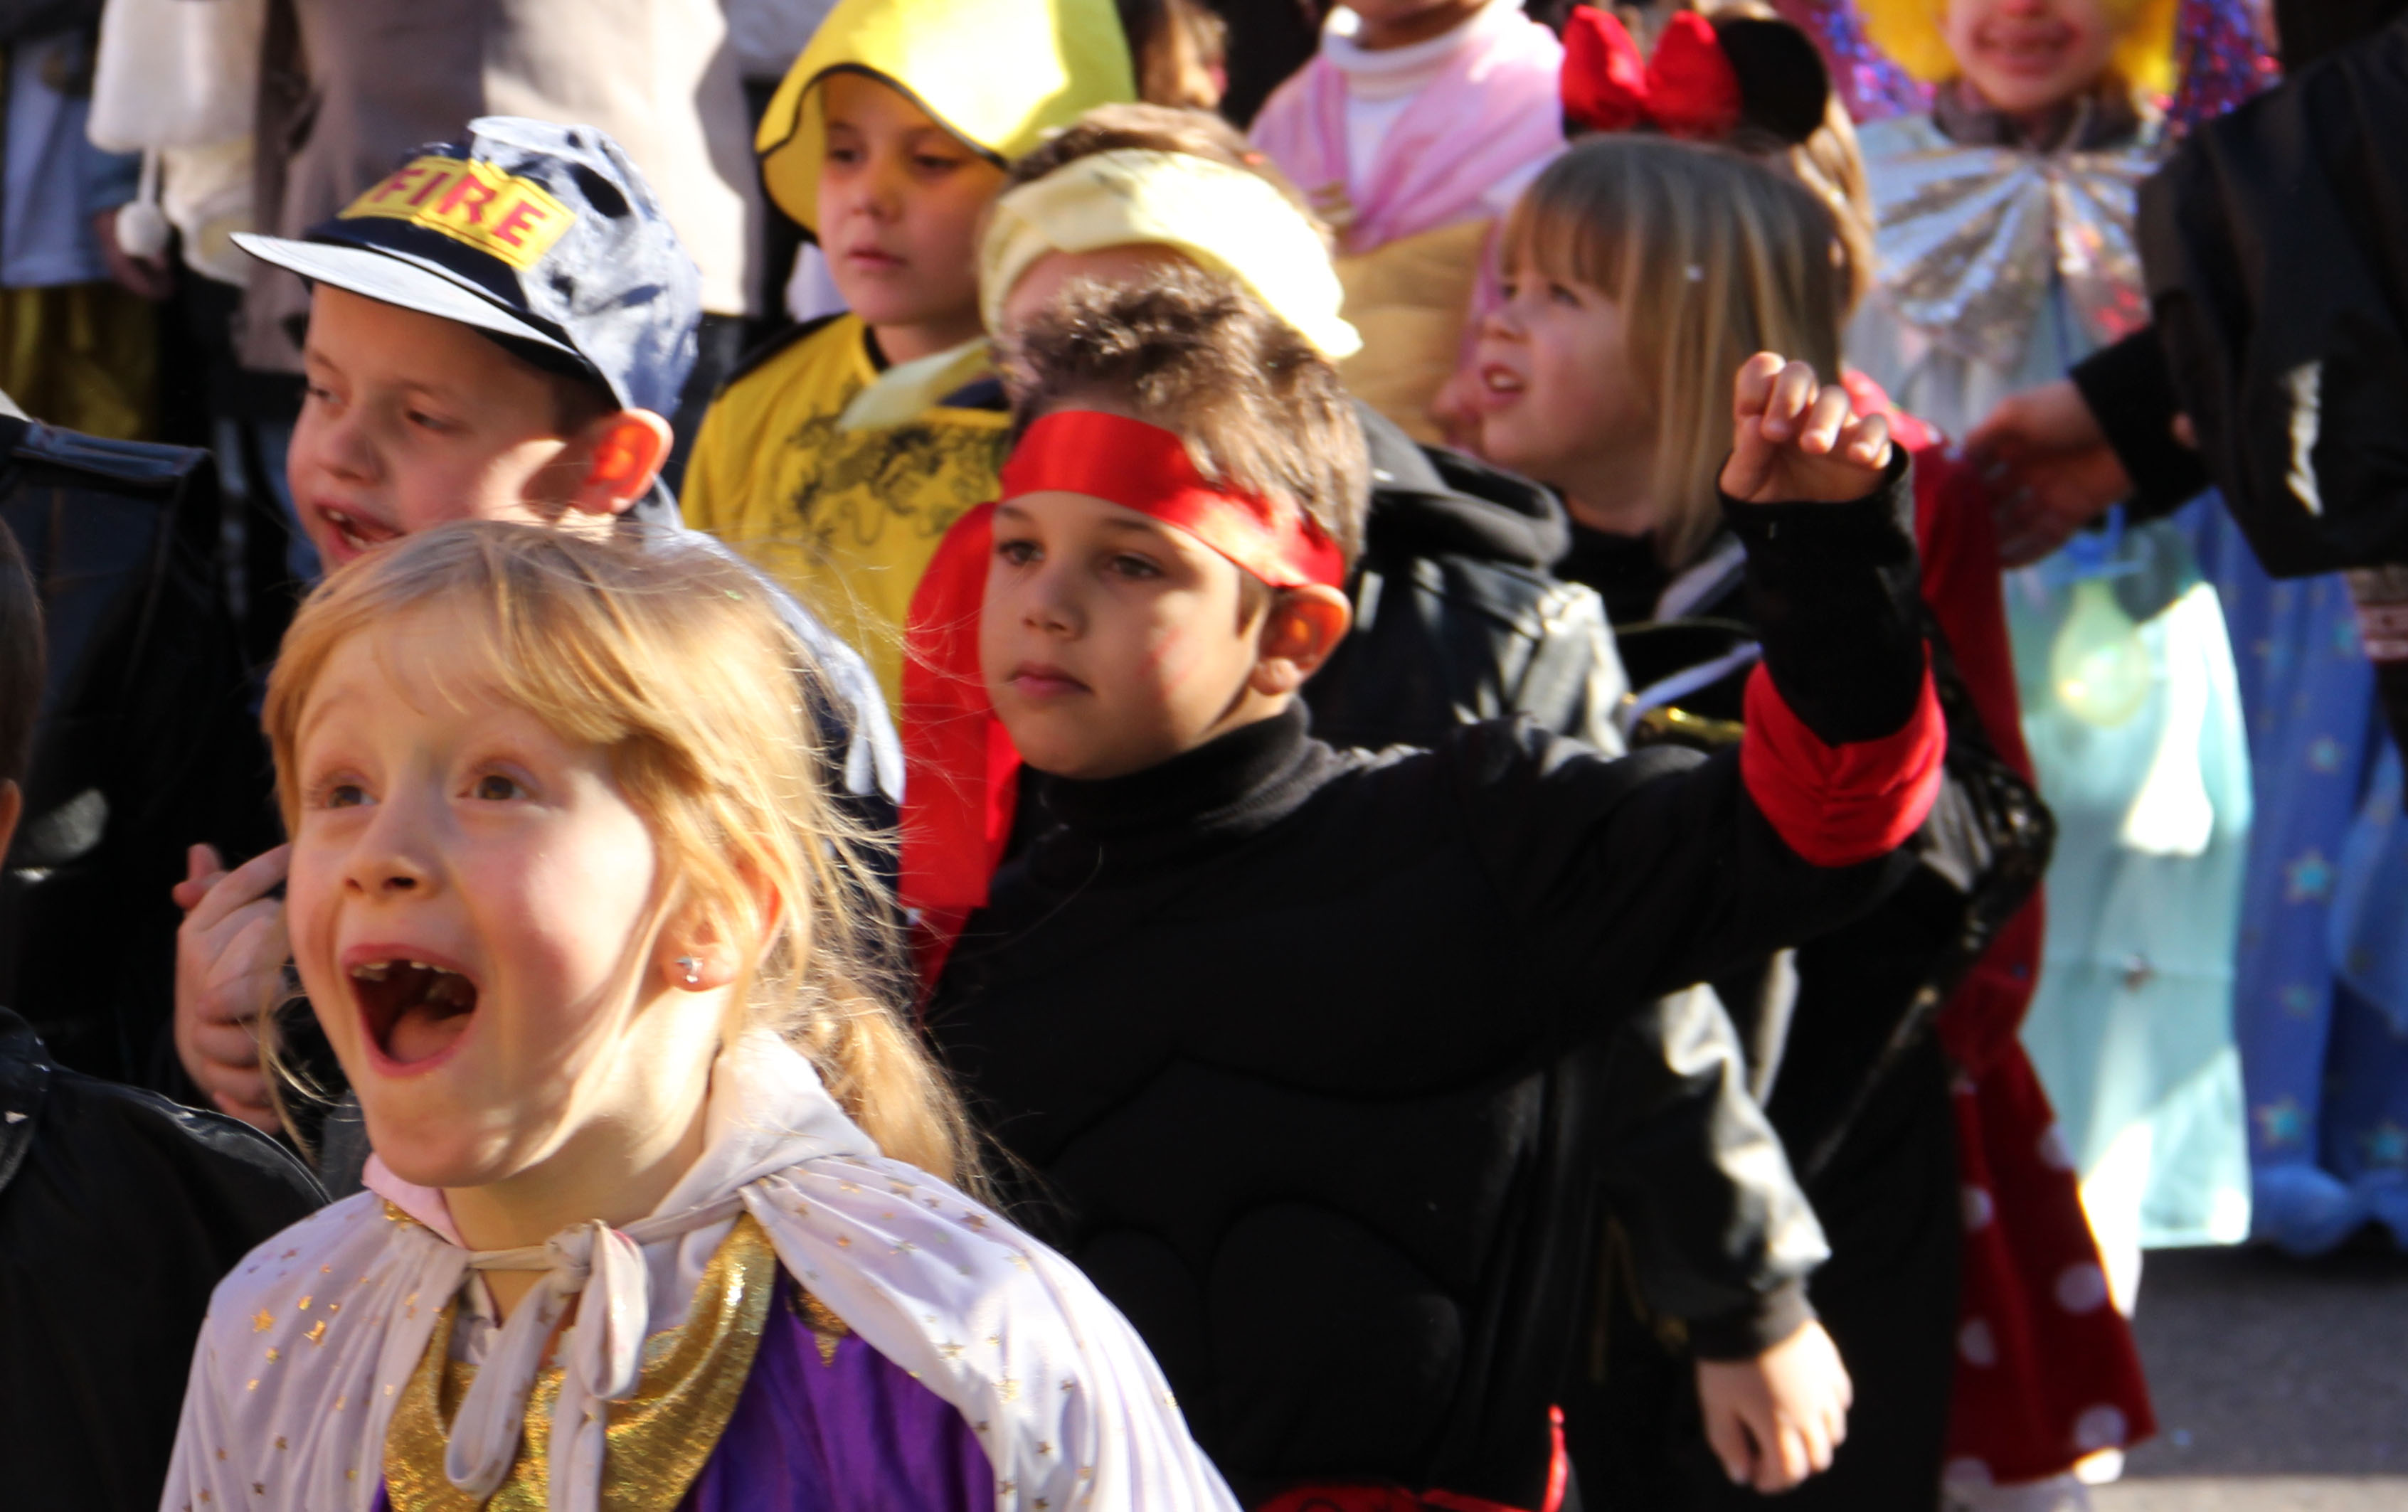 Les enfants ont fêté carnaval dans la joie - Polignac (43770)